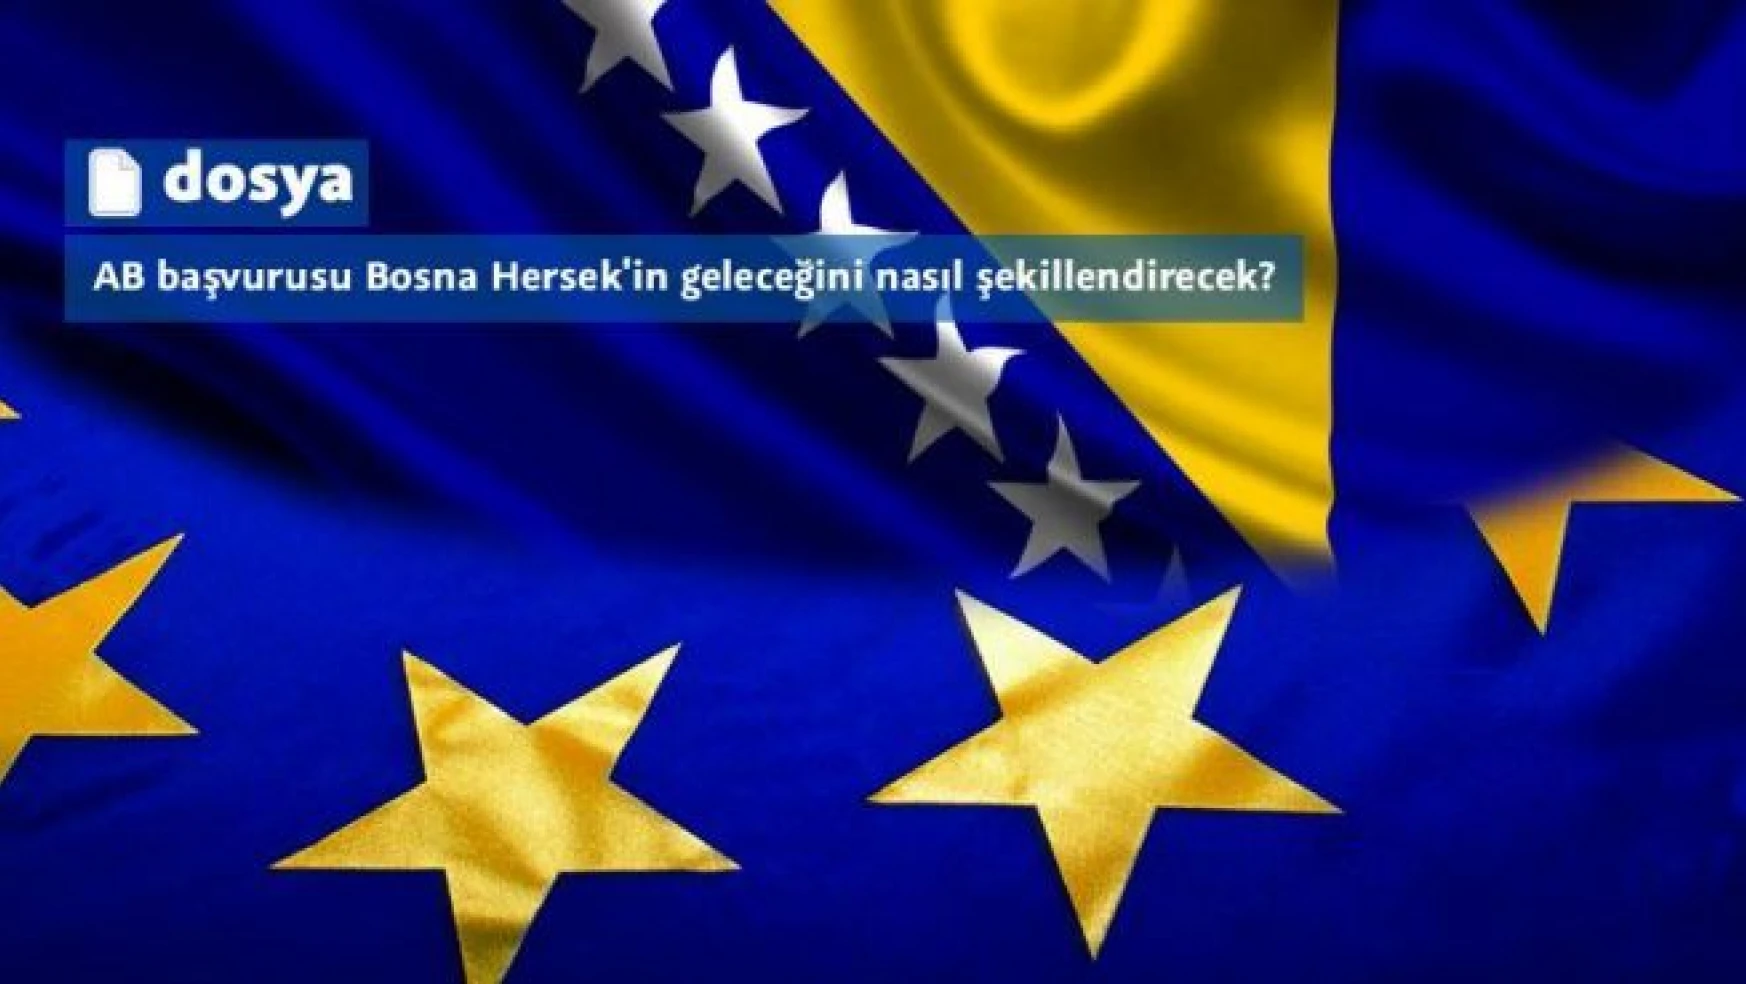 AB başvurusu Bosna Hersek'in geleceğini nasıl şekillendirecek?